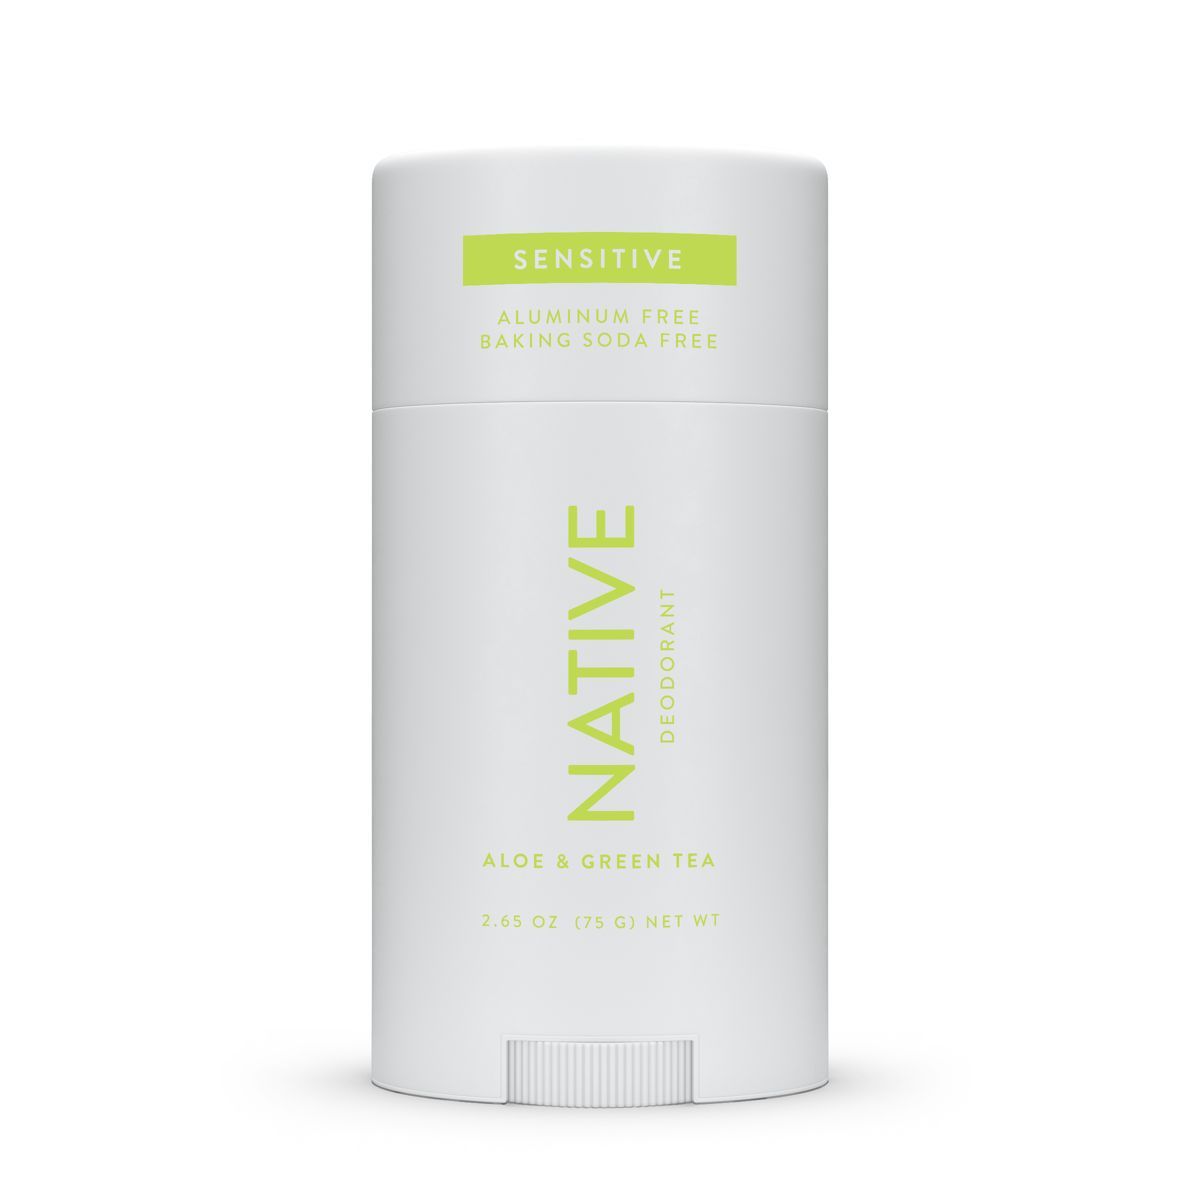 Native Sensitive Deodorant for Women - Aloe & Green Tea - 2.65oz | Target